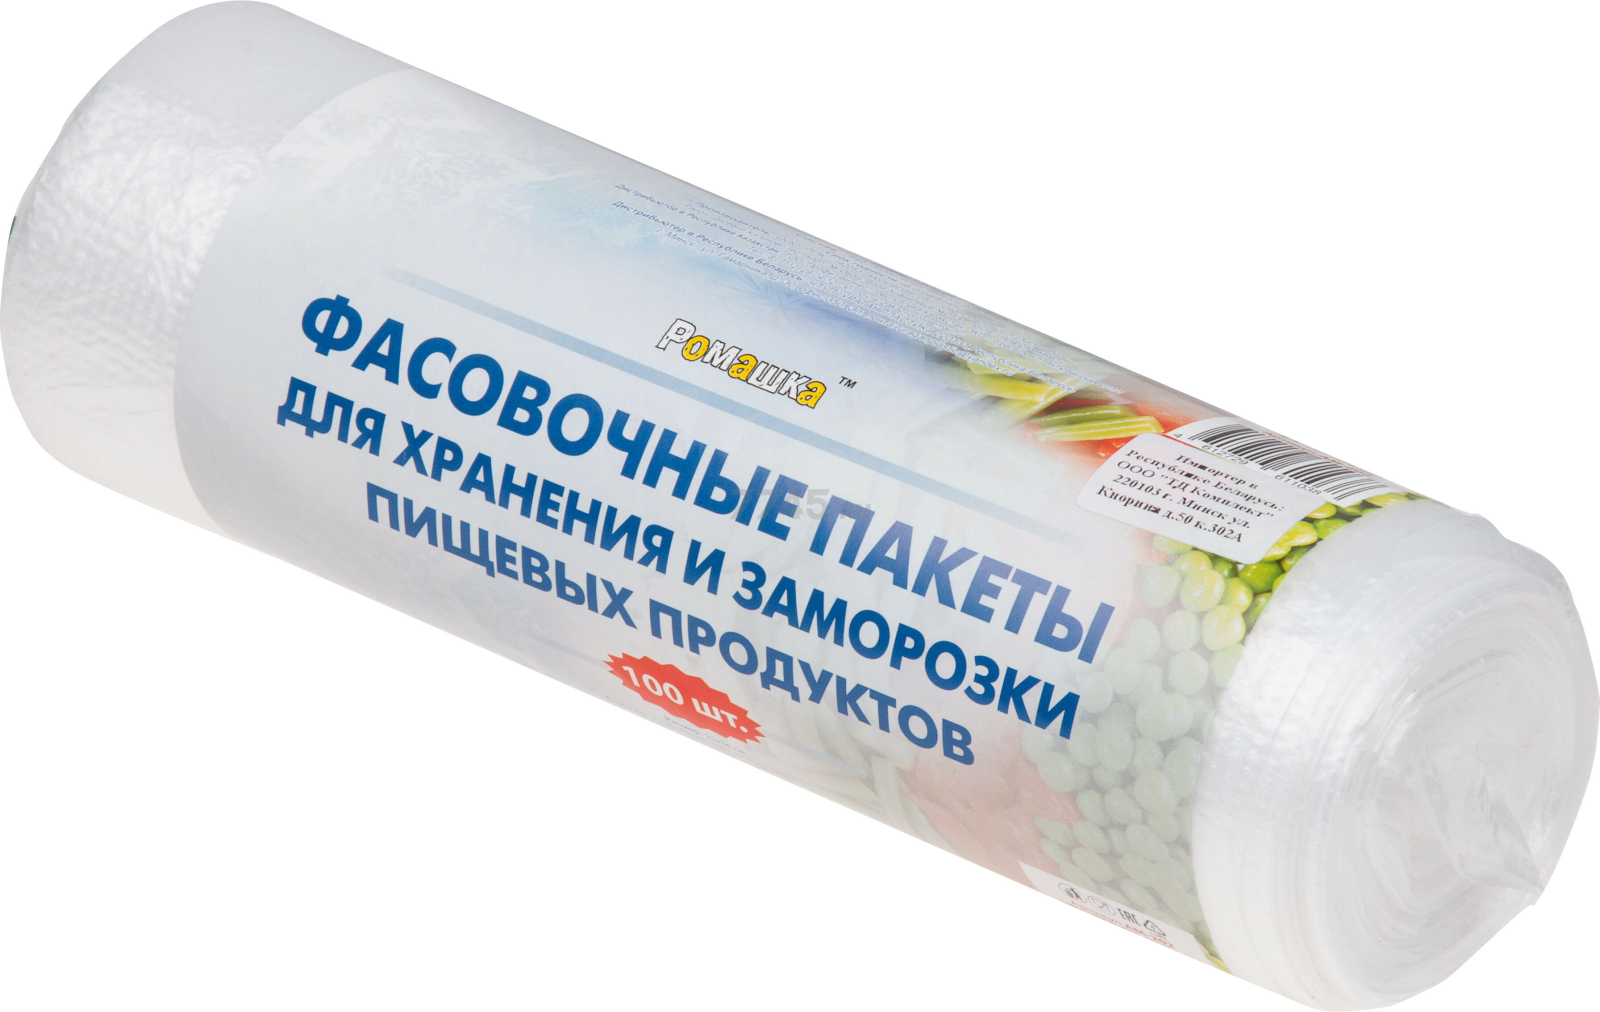 Пакеты для хранения и заморозки пищевых продуктов РОМАШКА 100 штук (АМ-202)